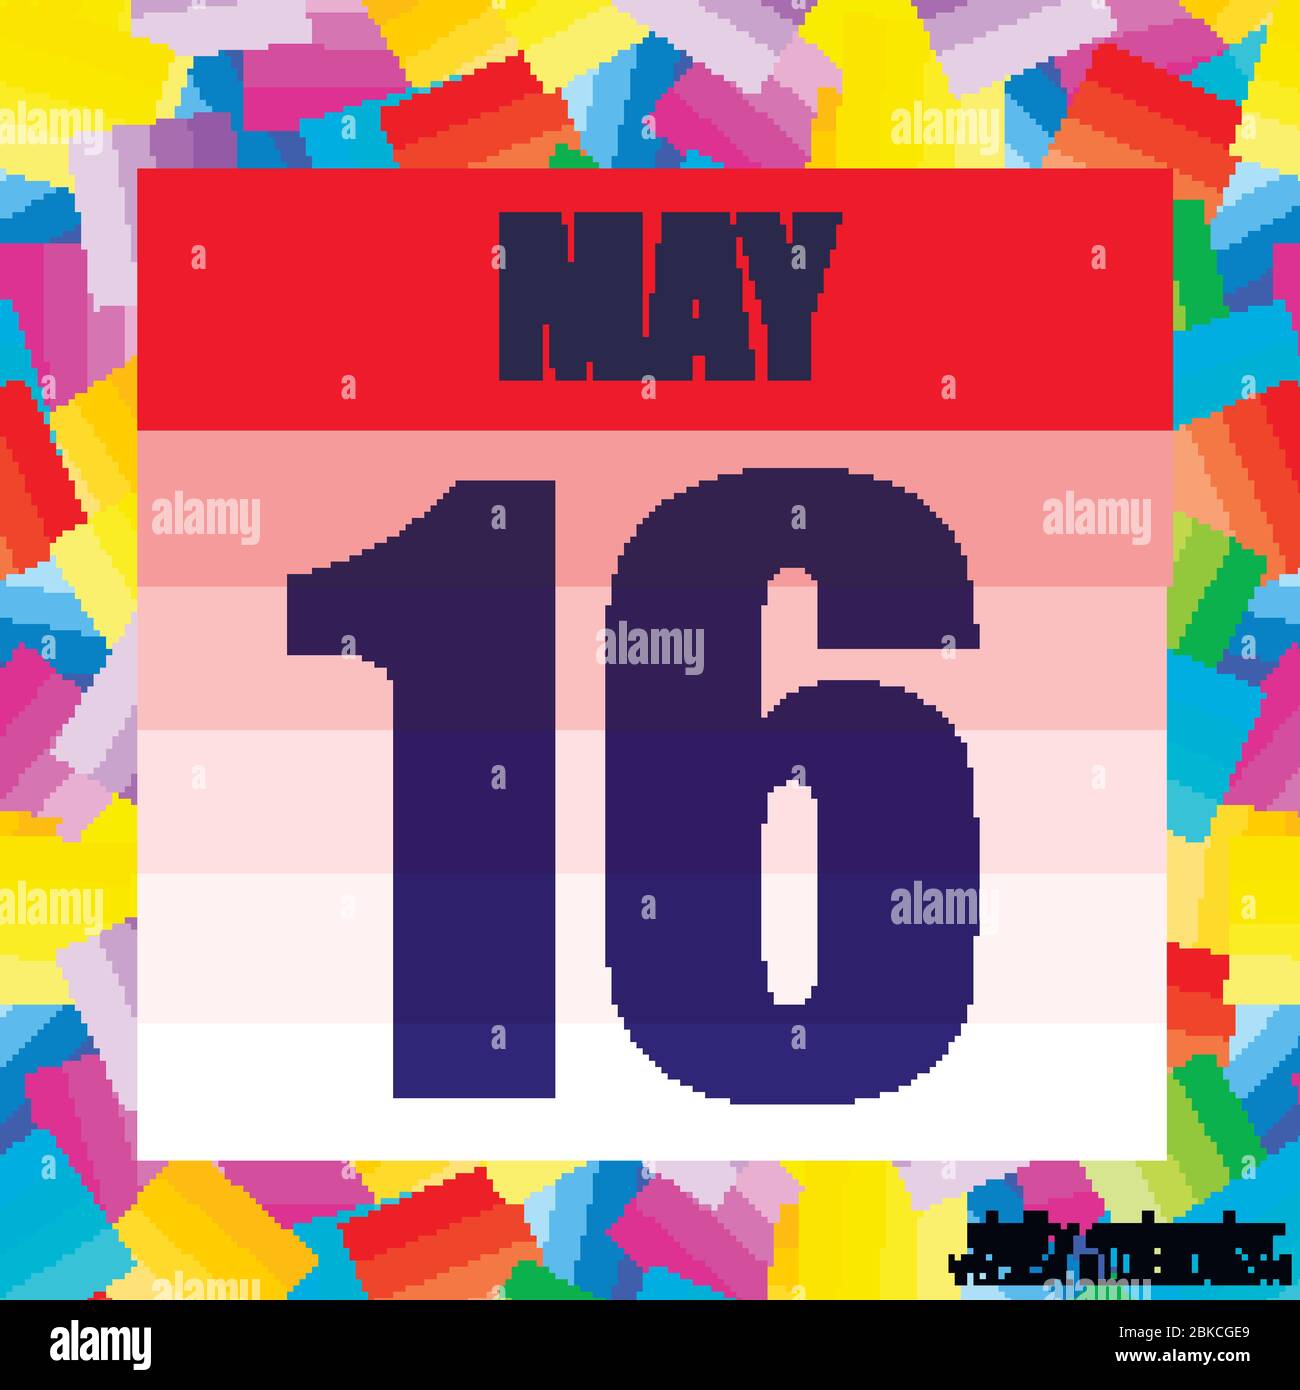 Symbol Mai 16. Für die Planung wichtiger Tag. Banner für Feiertage und besondere Tage. Symbol vom 16. Mai. Abbildung. Stock Vektor